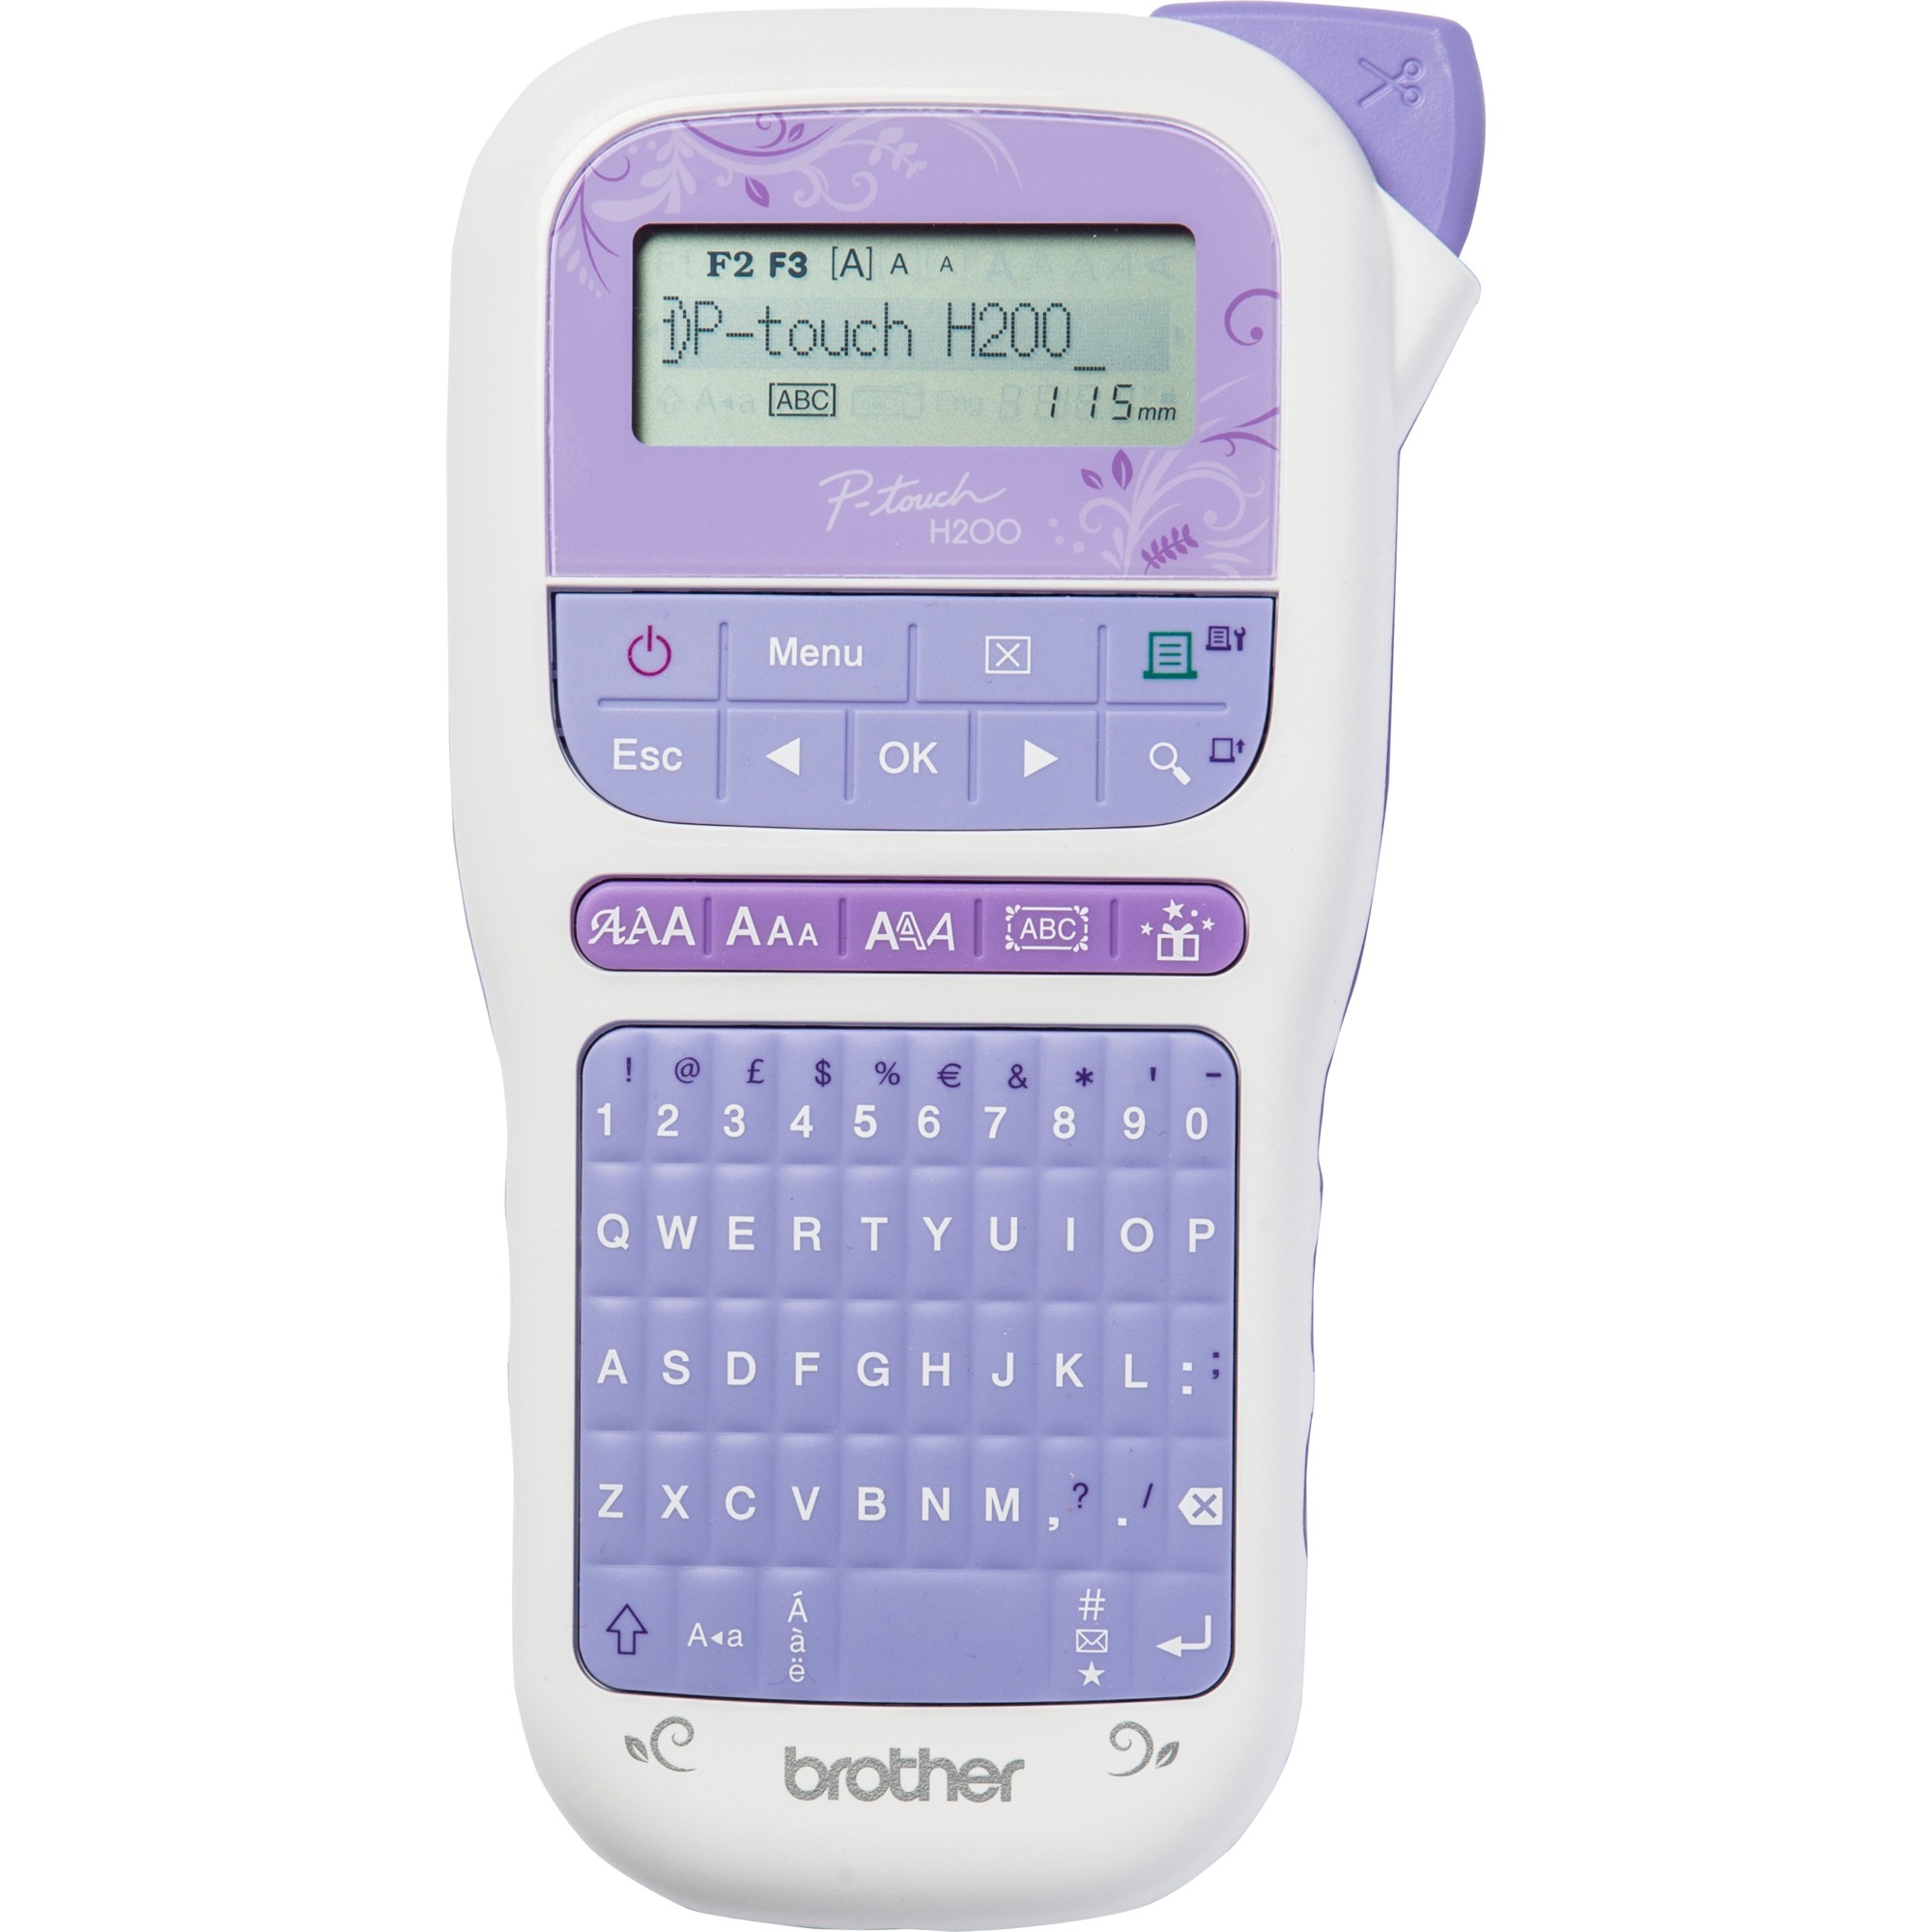 Image of Alternate - P-touch H200, Beschriftungsgerät online einkaufen bei Alternate